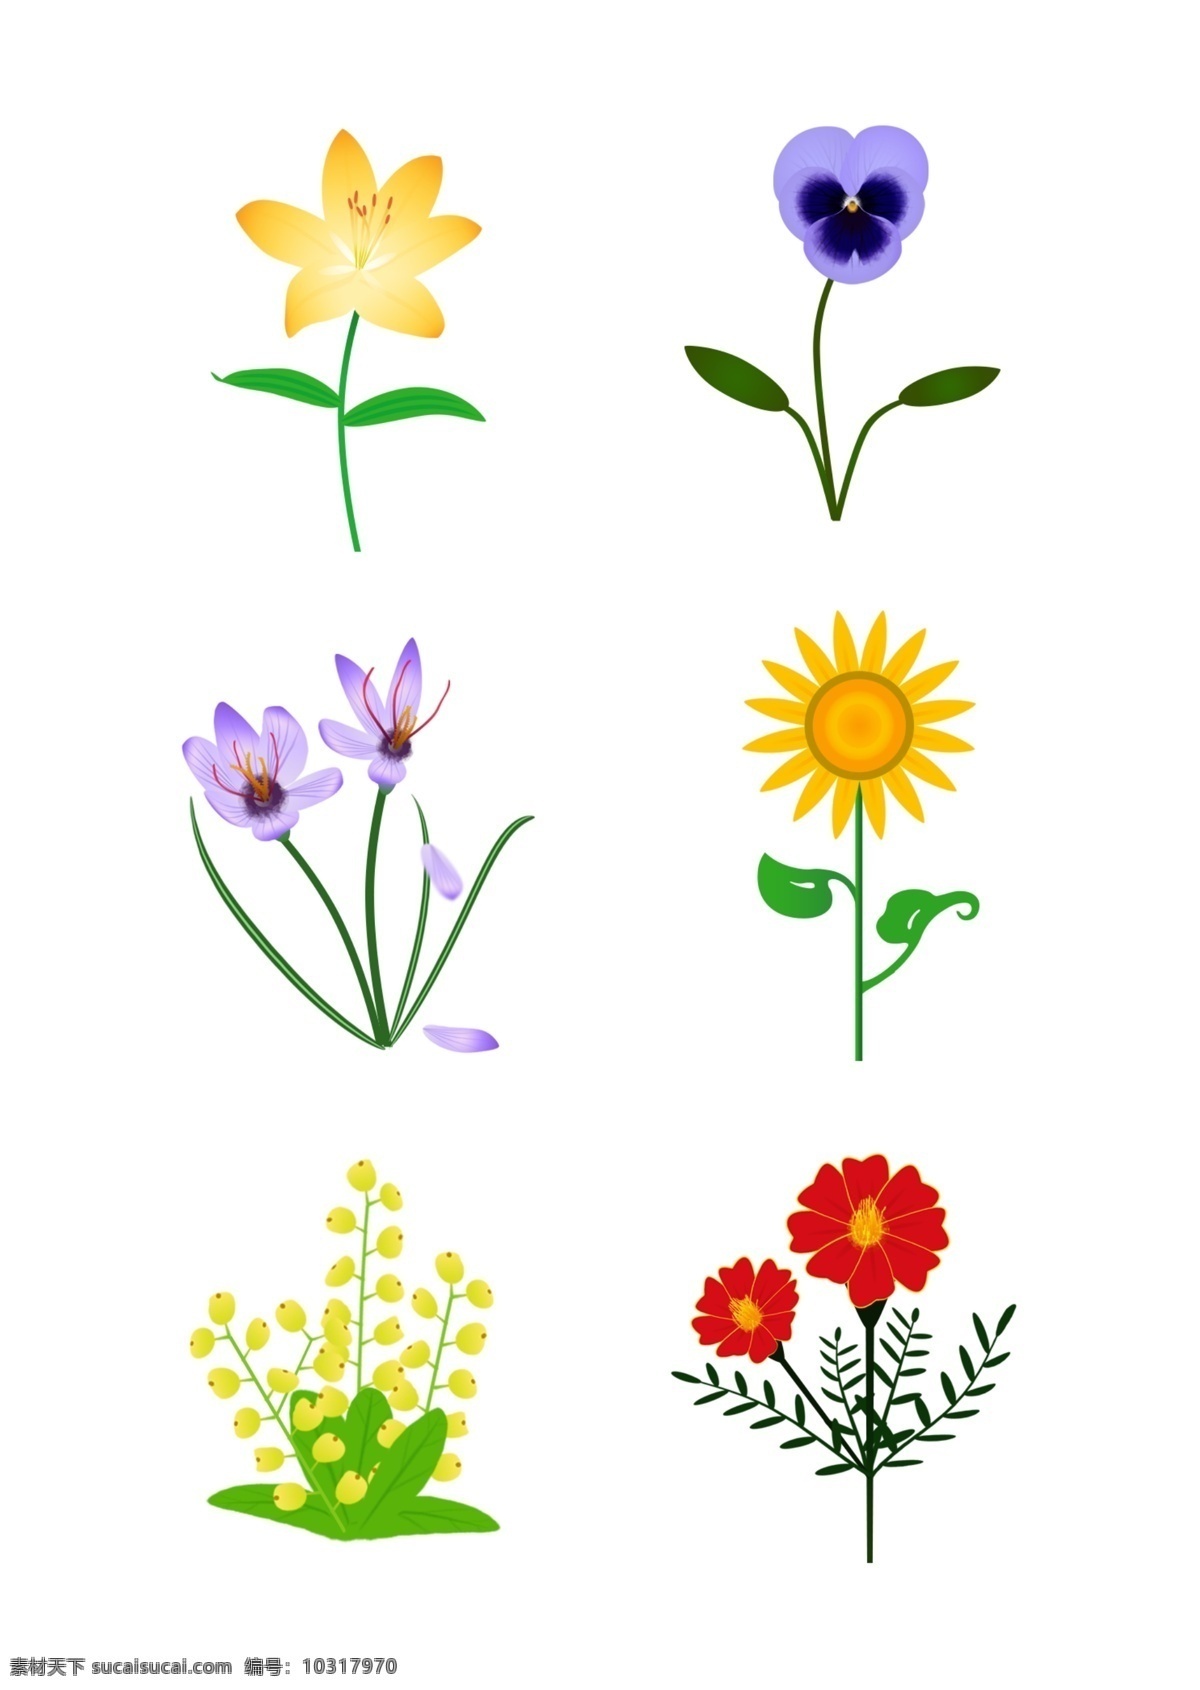 简约 手绘 矢量 向日葵 藏红花 花朵 叶子 元素 百合 三色堇 米兰花 孔雀草 绿叶 设计元素